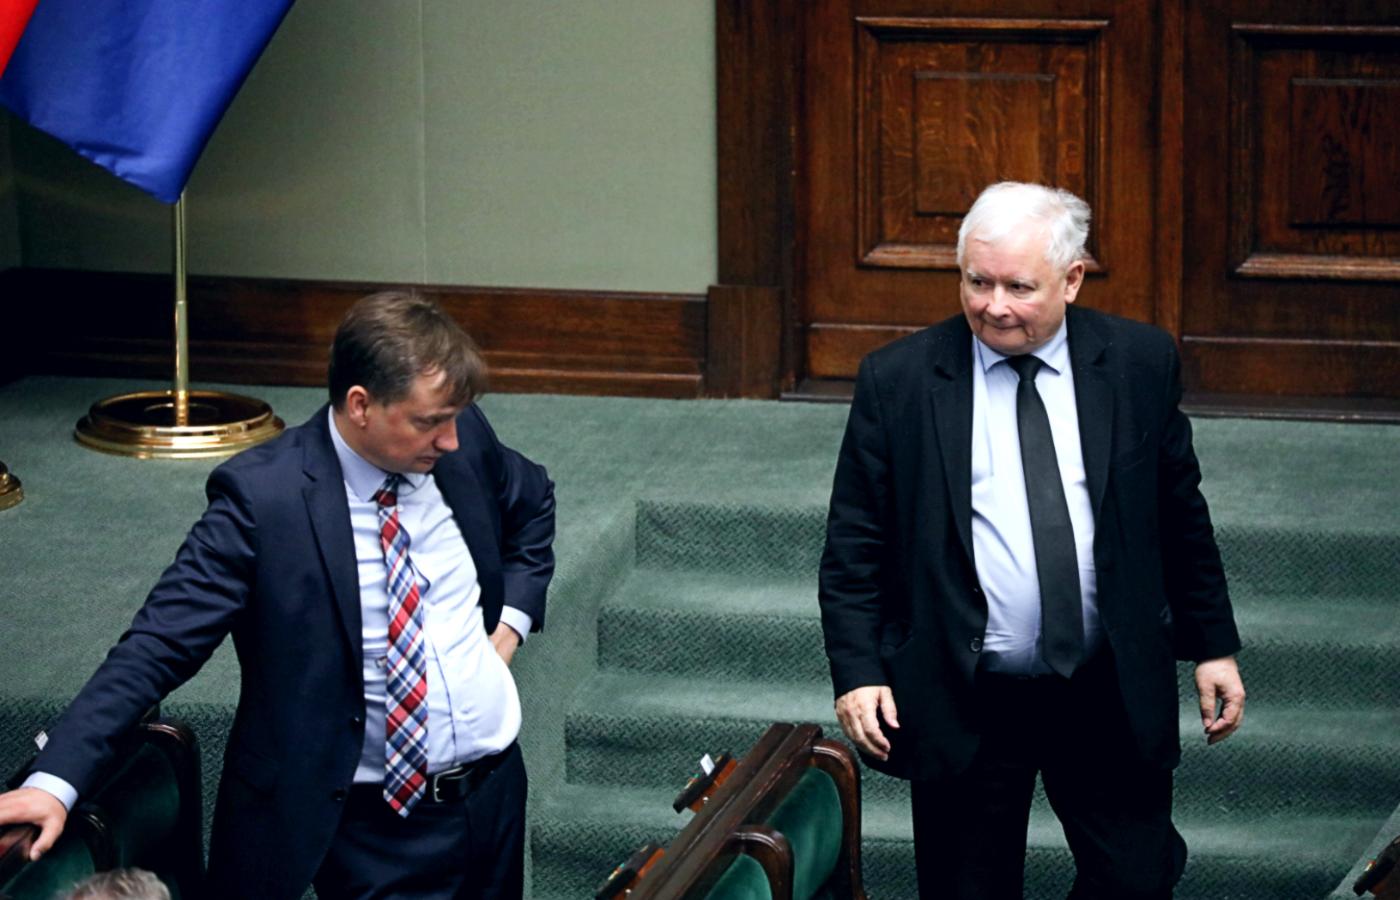 Zbigniew Ziobro i Jarosław Kaczyński w Sejmie. Zdjęcie z 24 lipca 2020 r.